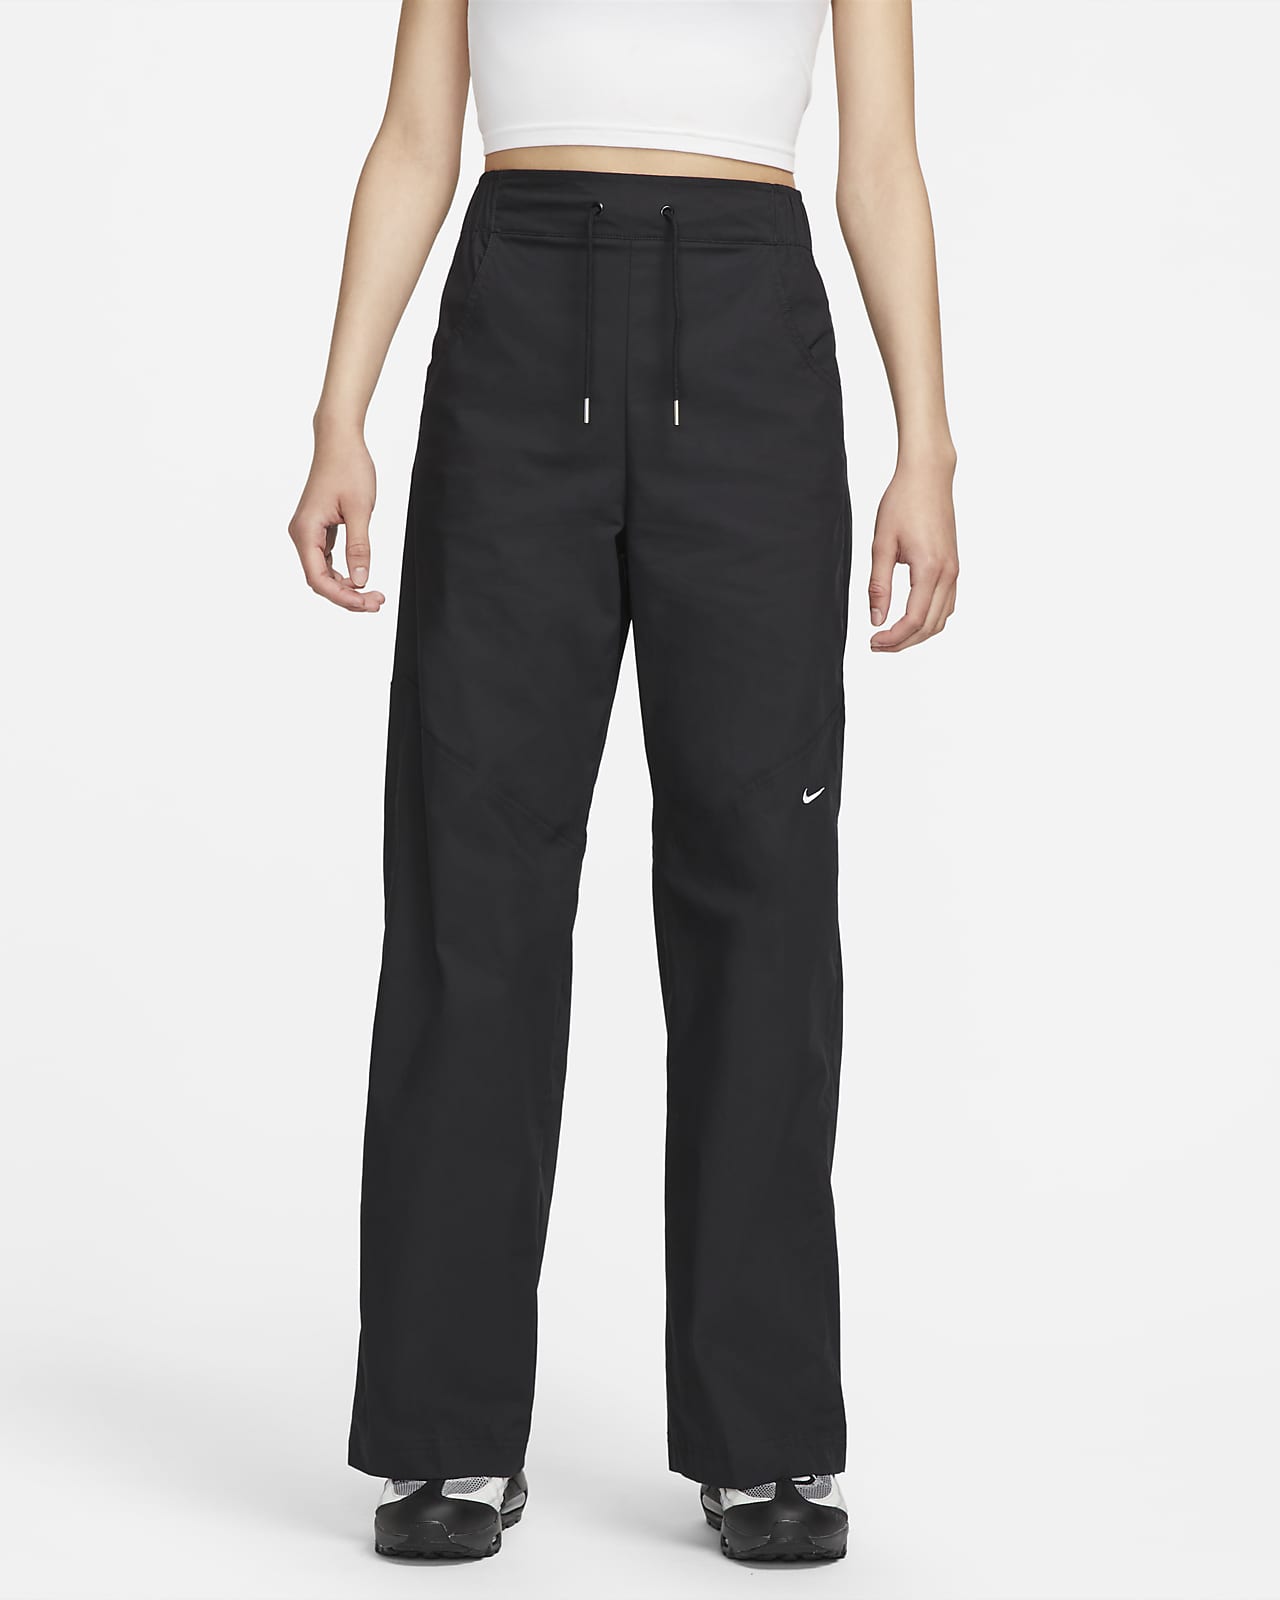 Nike Sportswear Essentials Pantalons de teixit Woven amb cintura alta - Dona